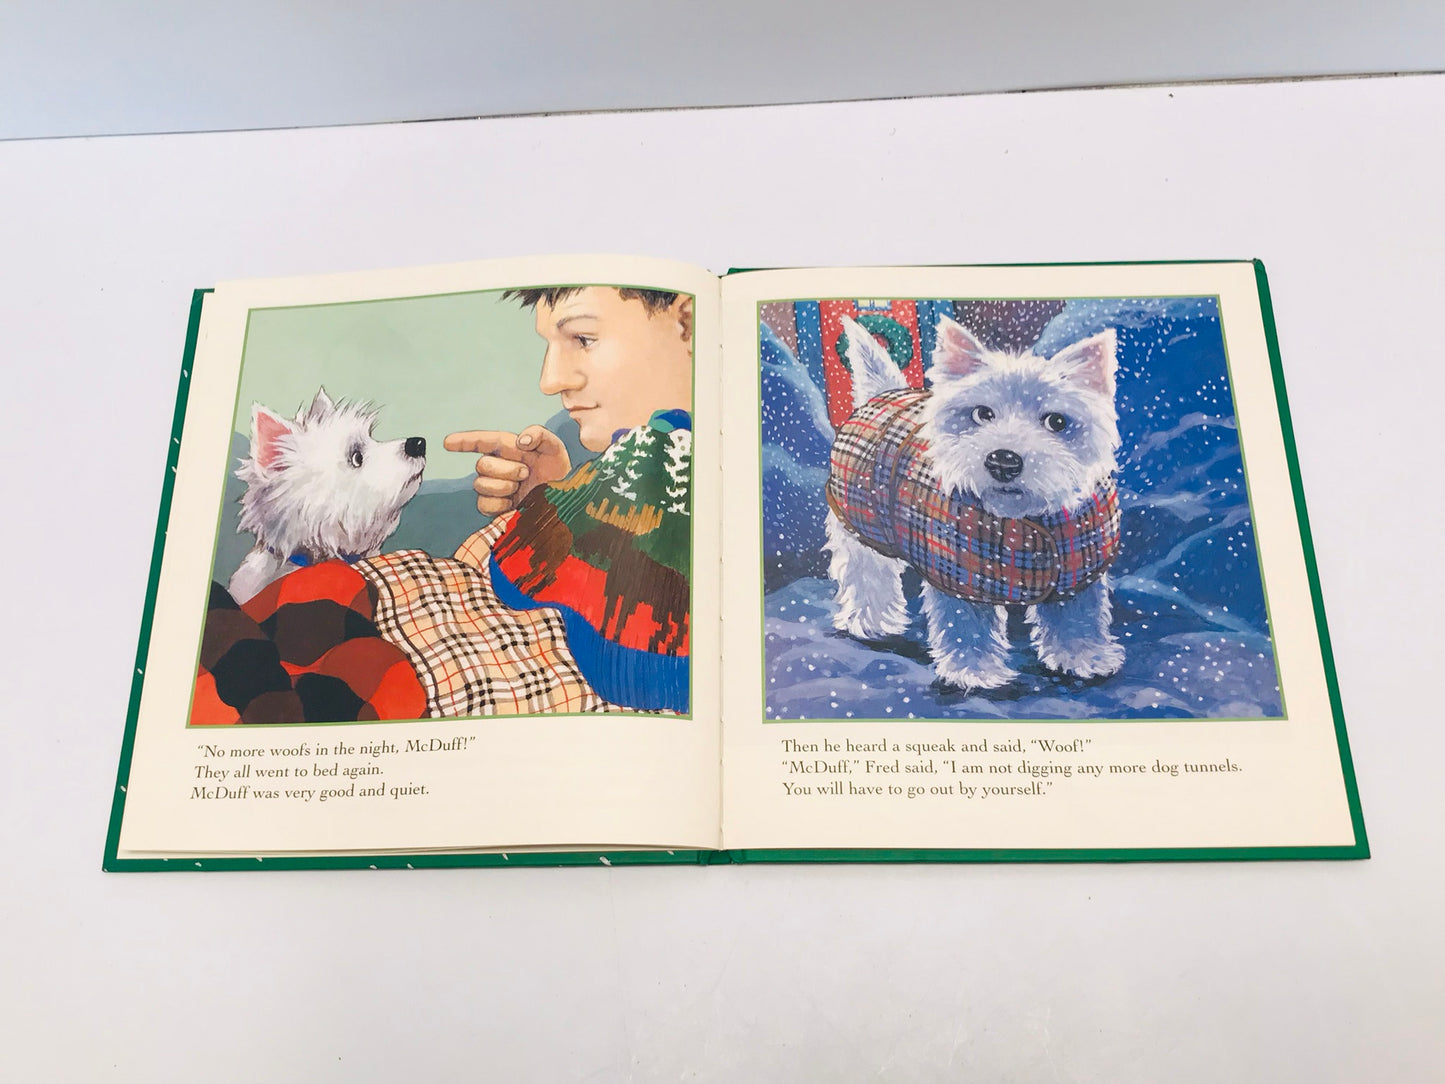 Christmas McDuff's Christmas Rosemary Wells Scotty Dog Children's Book Hardcovered